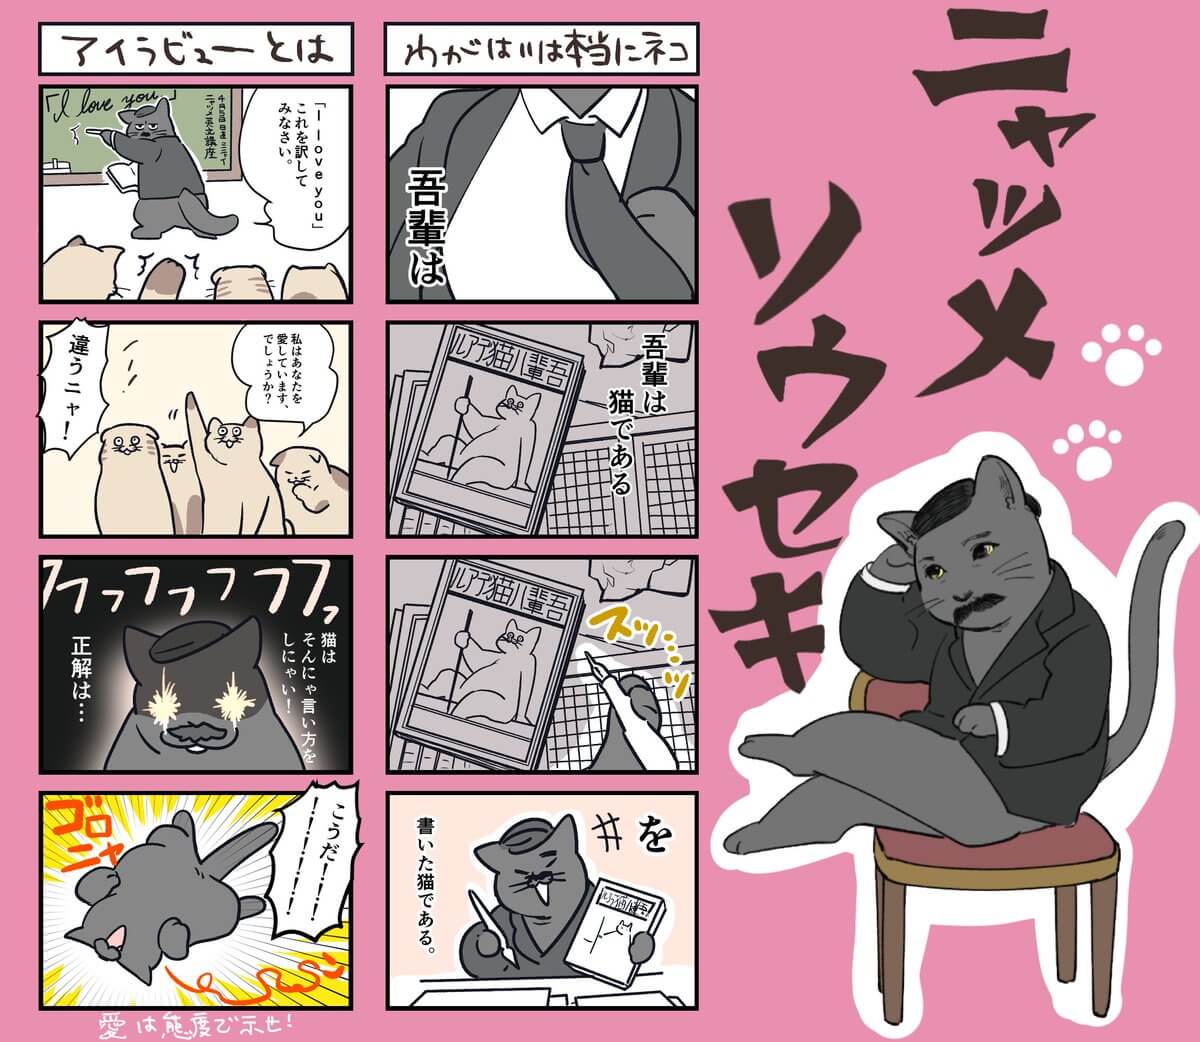 夏目漱石を猫化した4コマ漫画「ニャツメソウセキ」 by やじまり